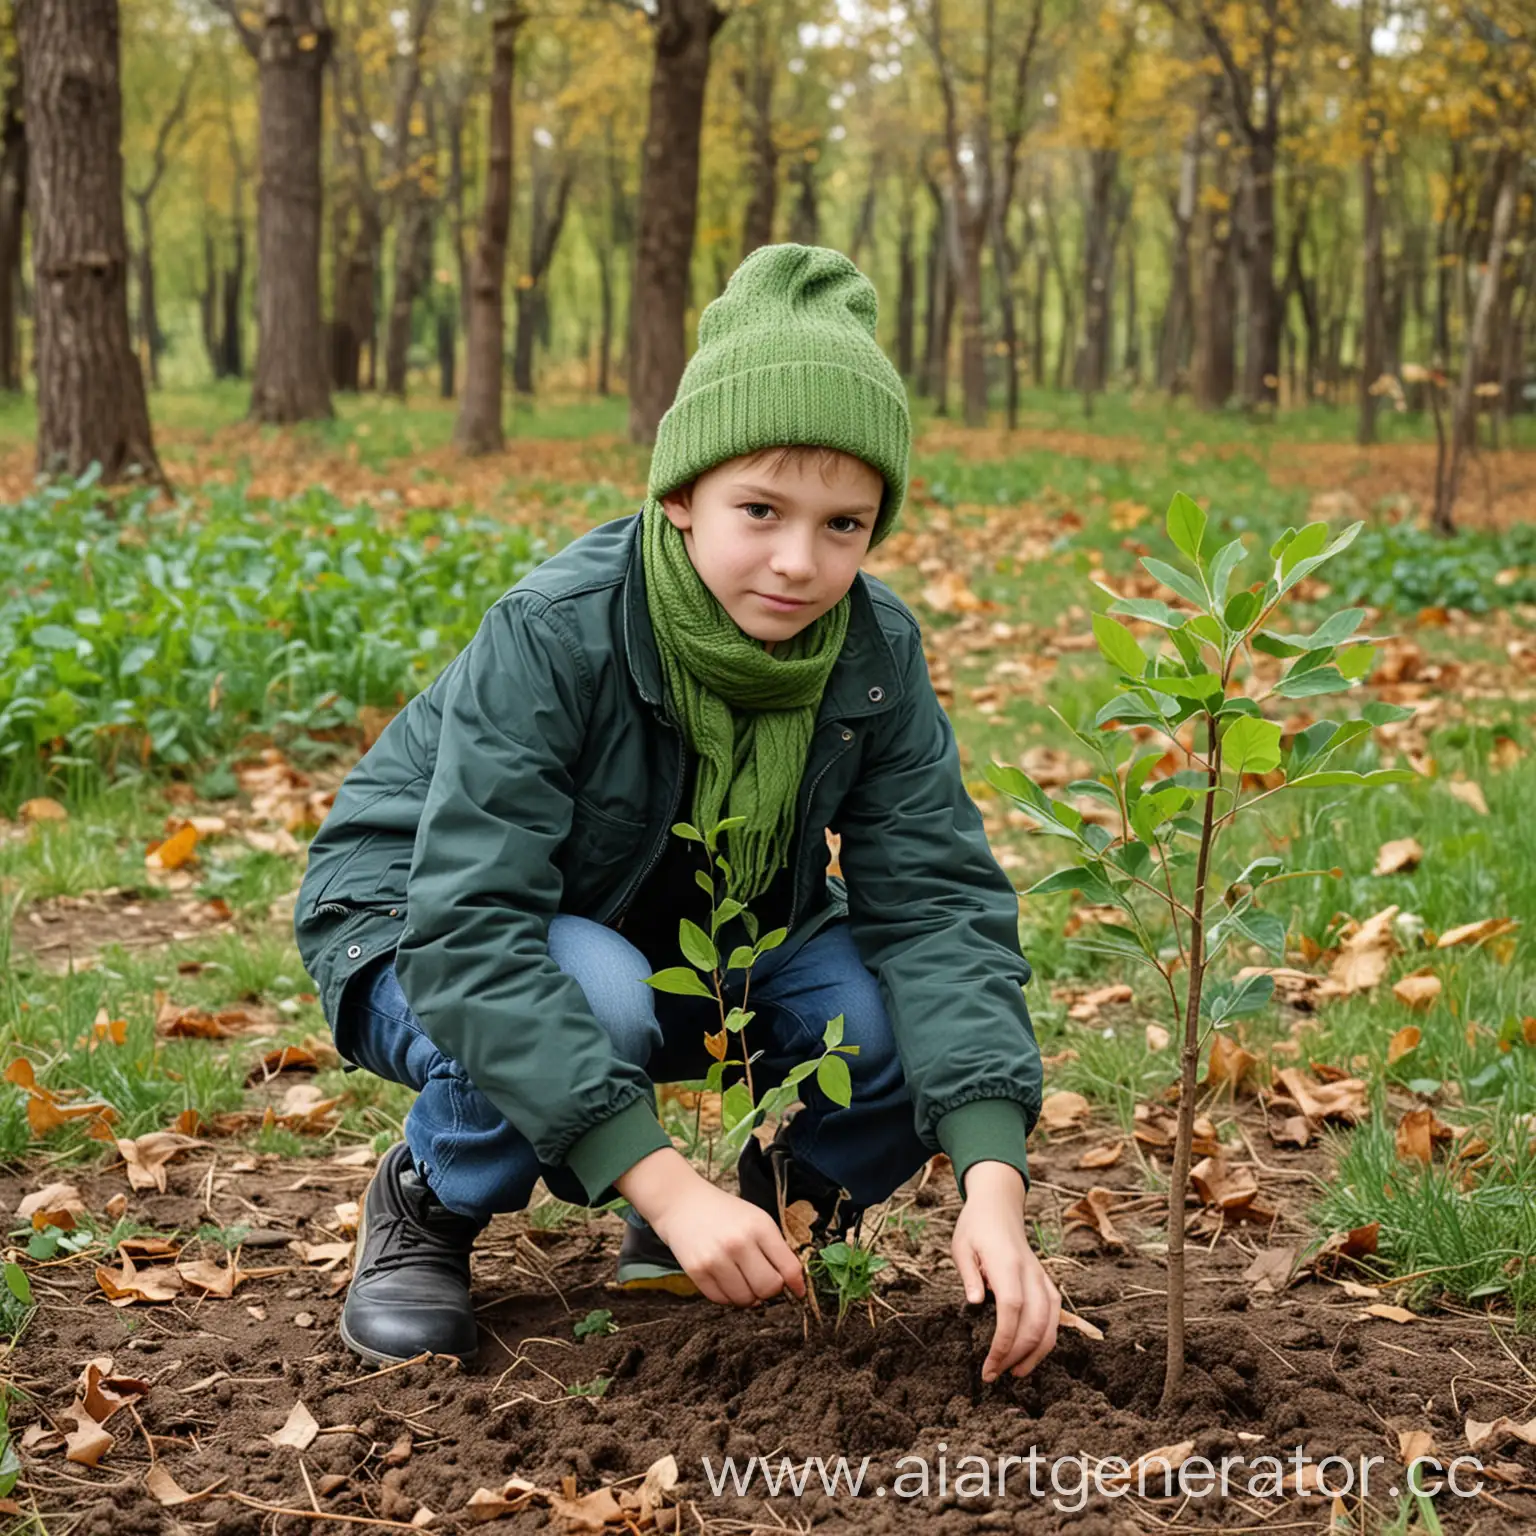 Реальная фотография. Мальчик 13 лет в зелёной шапке и зеленом шарфе сажает саженец дерева в парке. Осень.